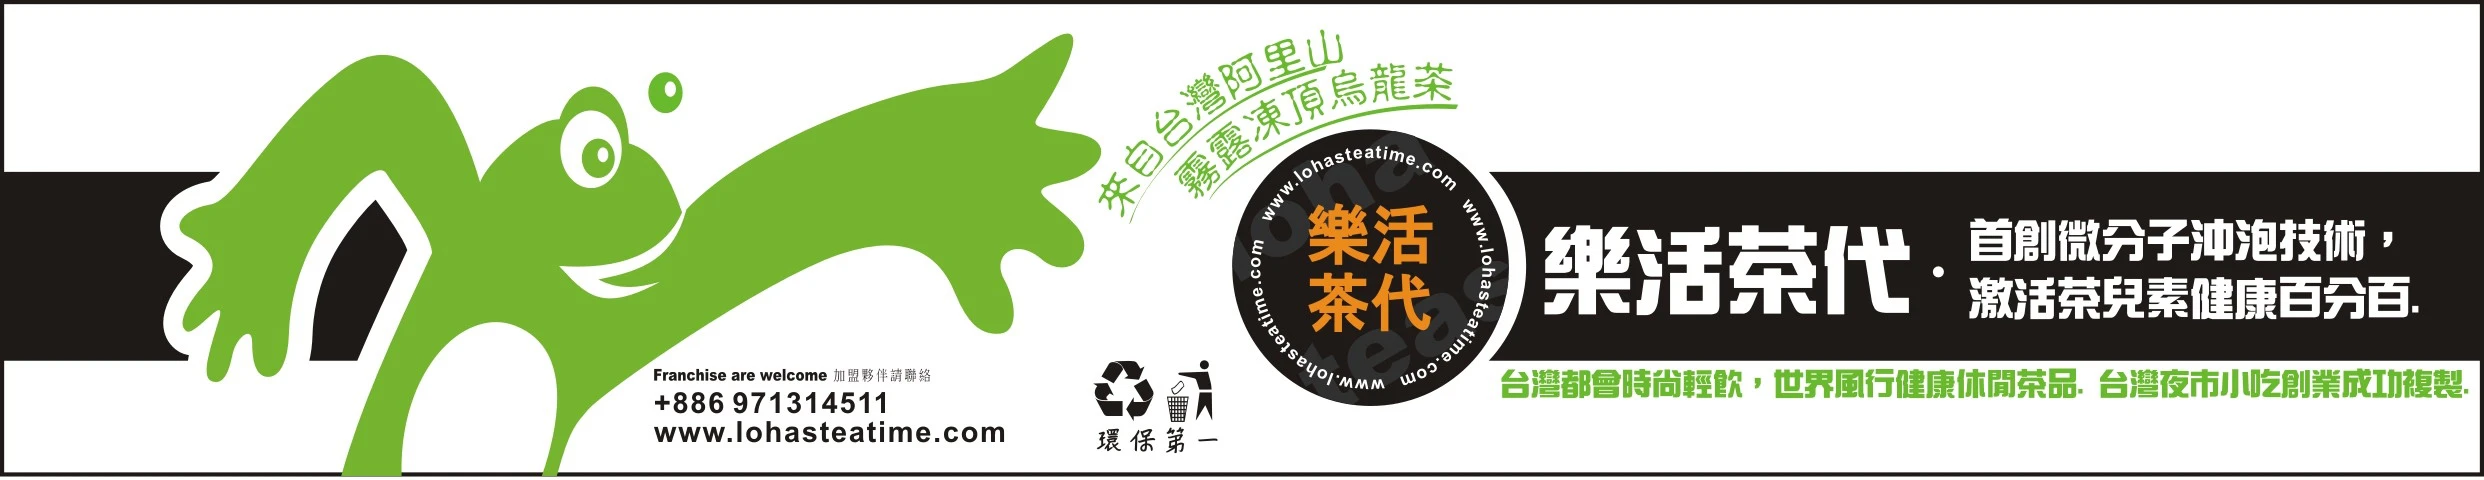 專業市場行銷團隊成功行銷台灣珍珠奶